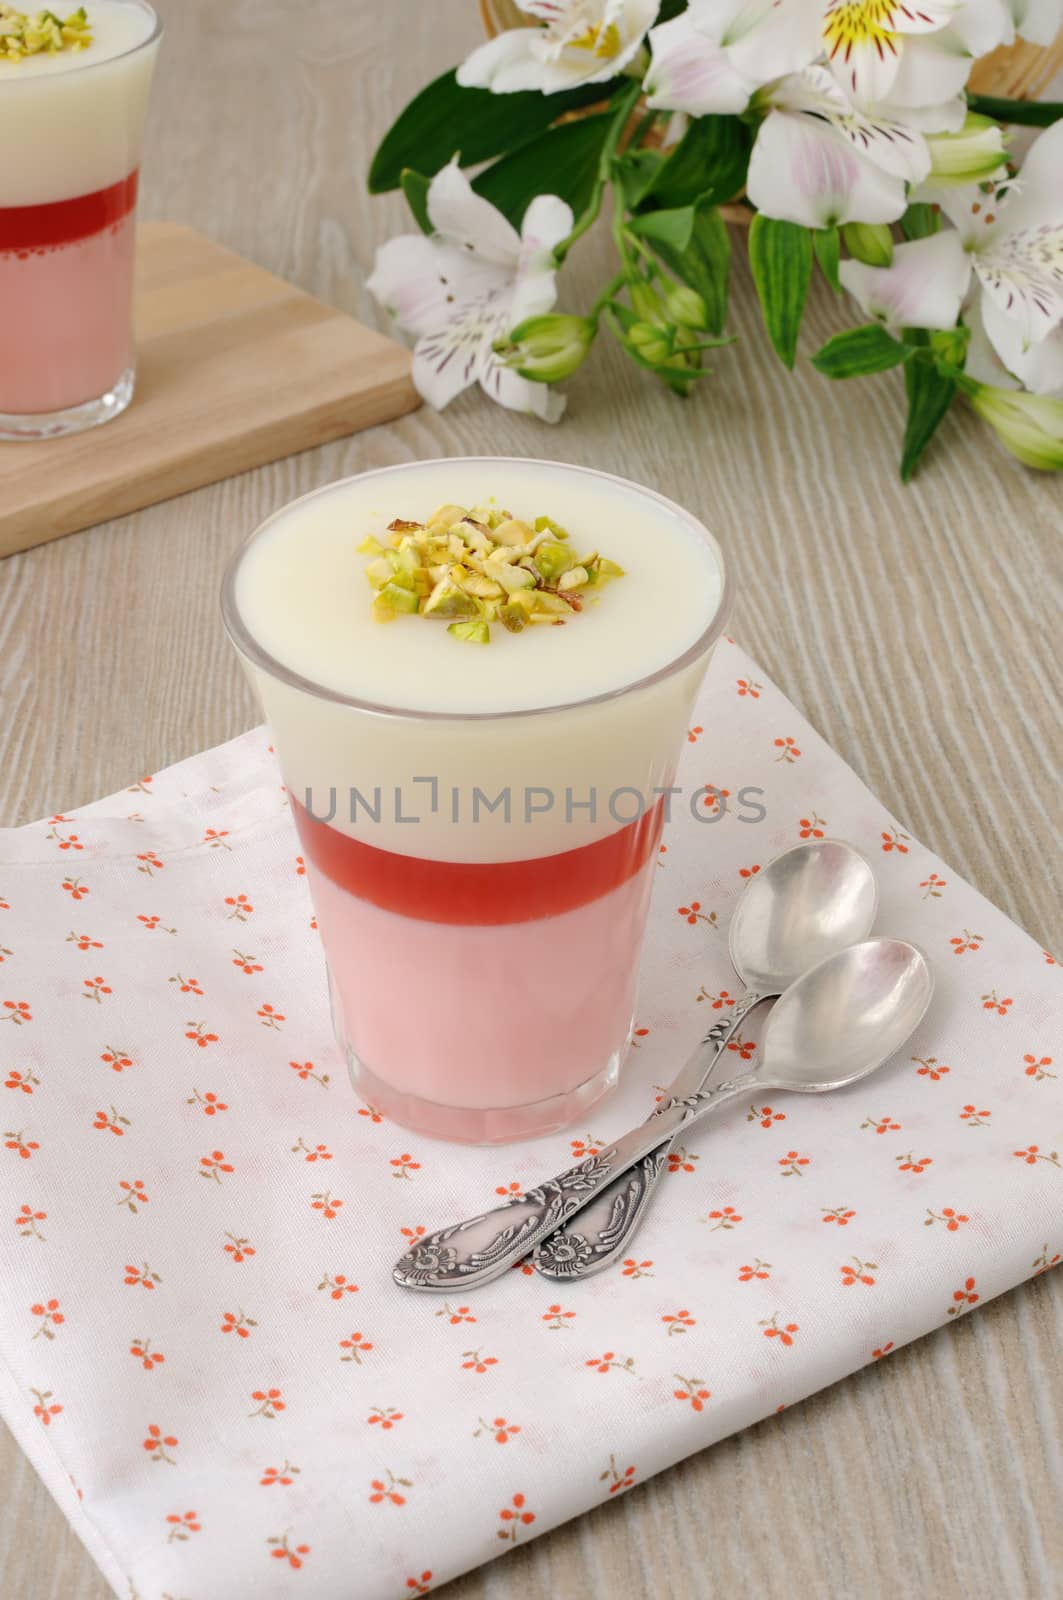 Strawberry yogurt dessert with pistachios by Apolonia